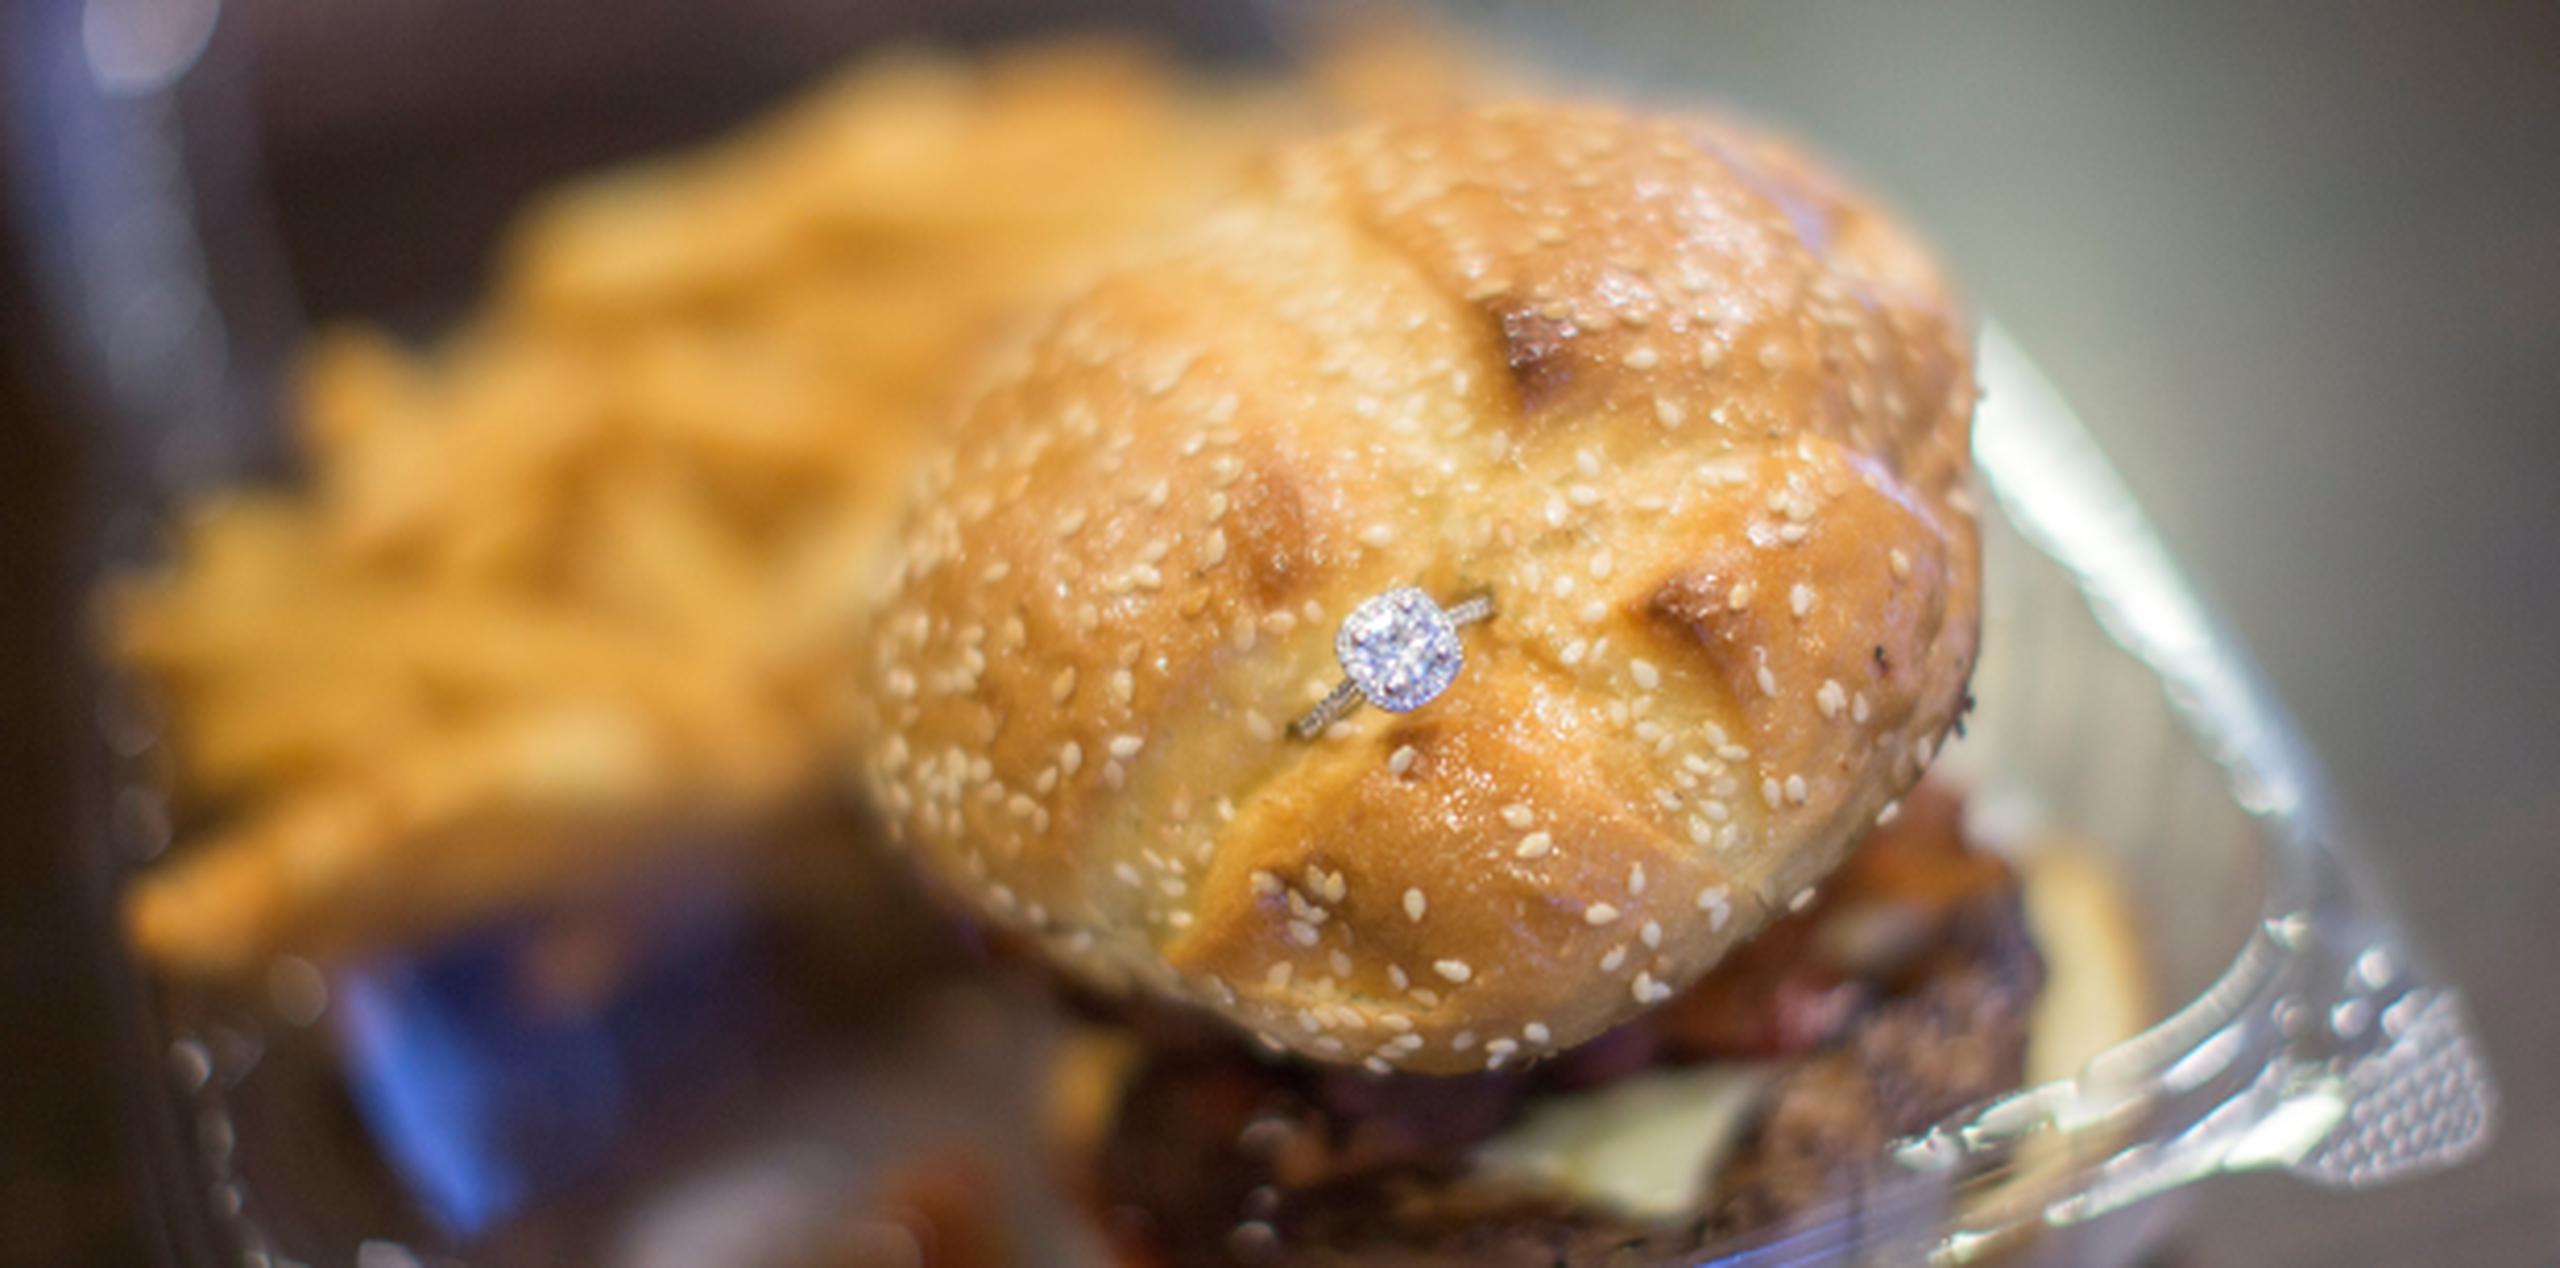 La hamburguesa en cuestión viene acompañada por aros de cebolla, queso americano, tocino, salsa barbacoa y patatas fritas, según la propia oferta. (EFE / Cj Gunther)